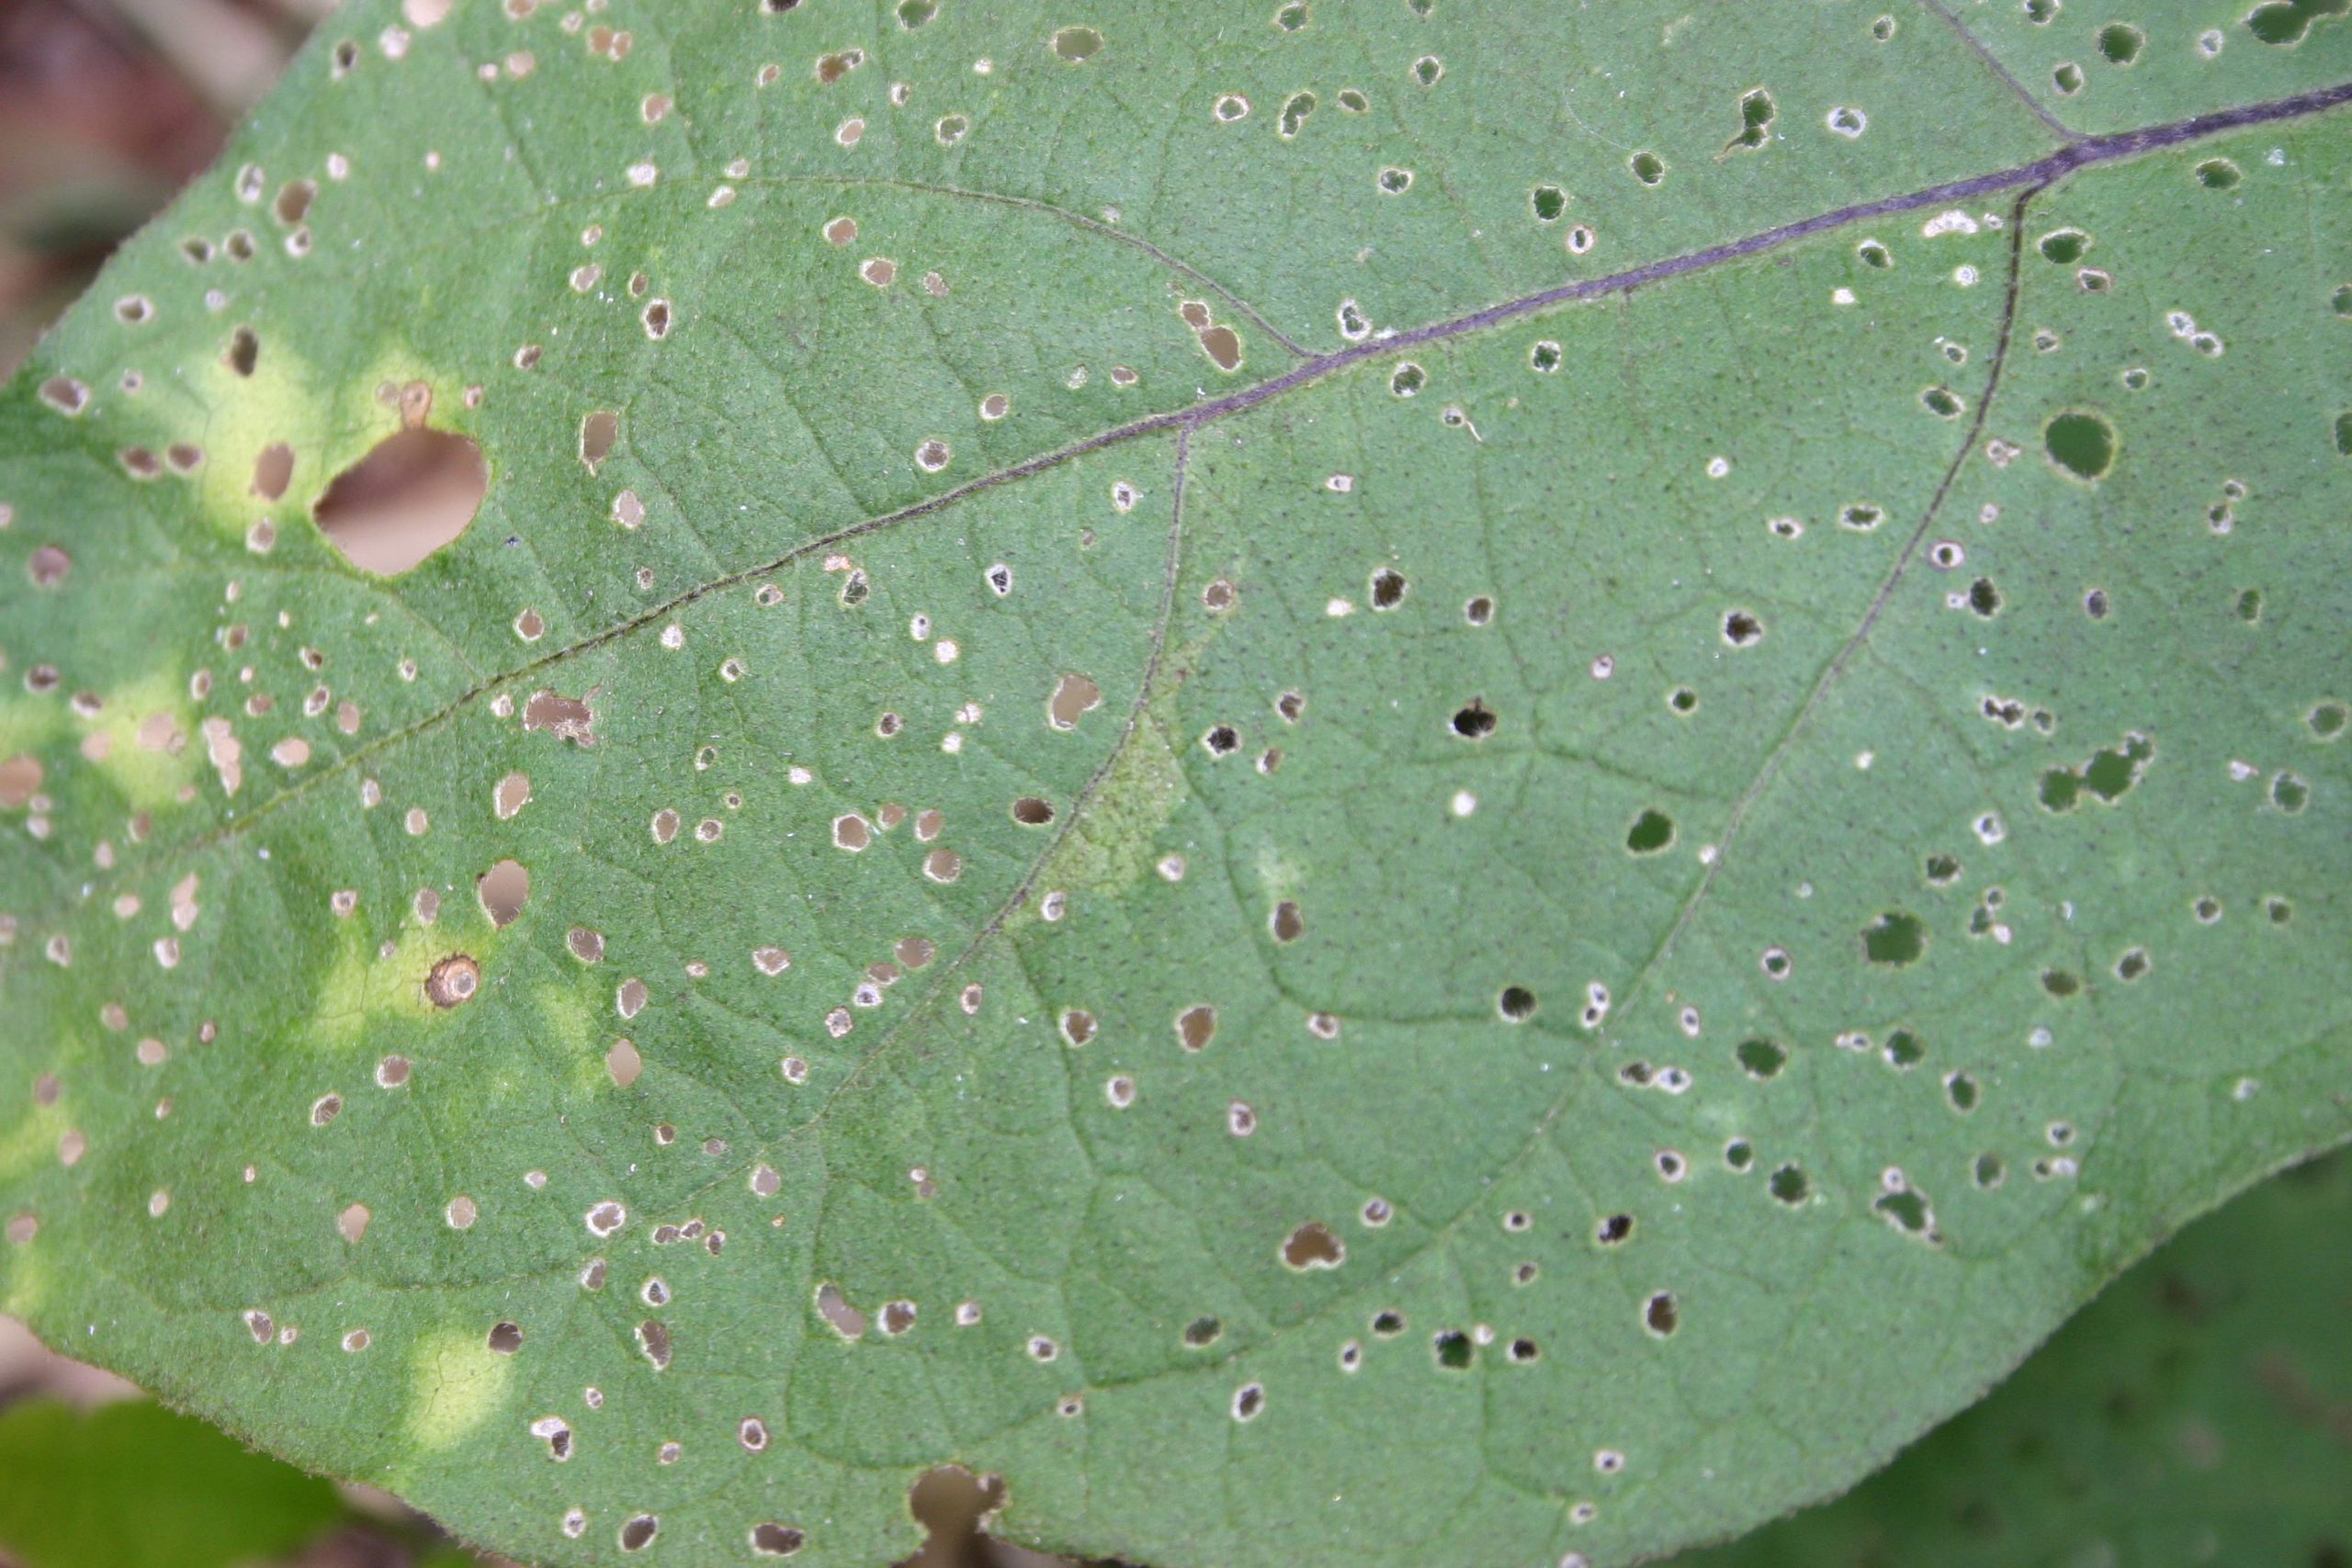 flea beetle damage top of leaf